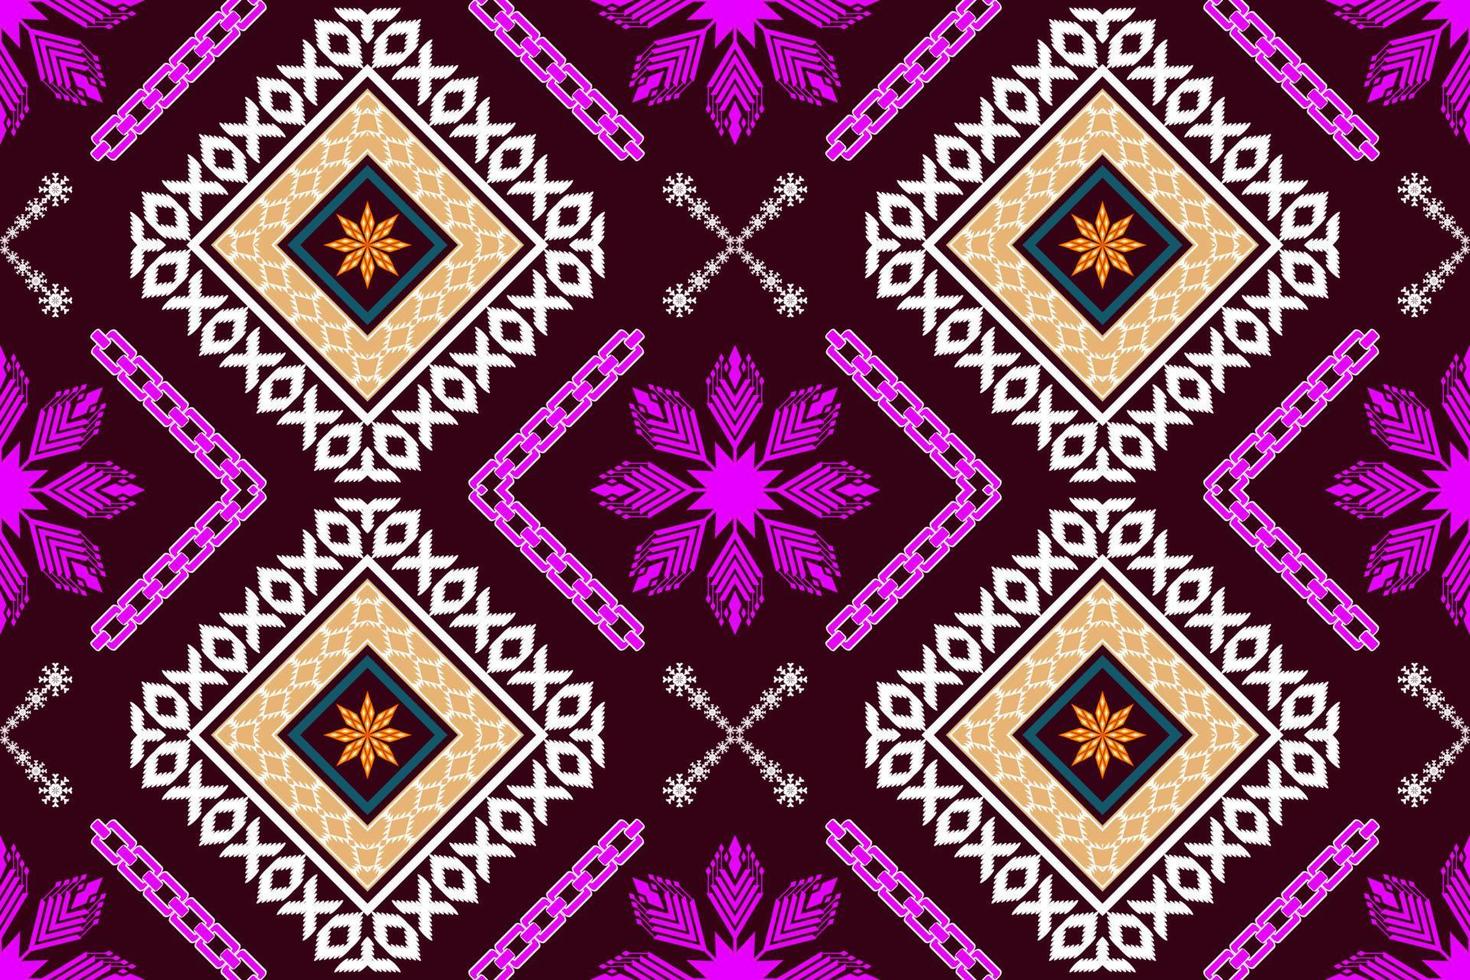 schöne Stickerei.geometrische ethnische orientalische Muster traditionell.aztekischer Stil,abstrakt,Vektor,Illustration.Design für Textur,Stoff,Kleidung,Verpackung,Mode,Teppich,Druck. vektor